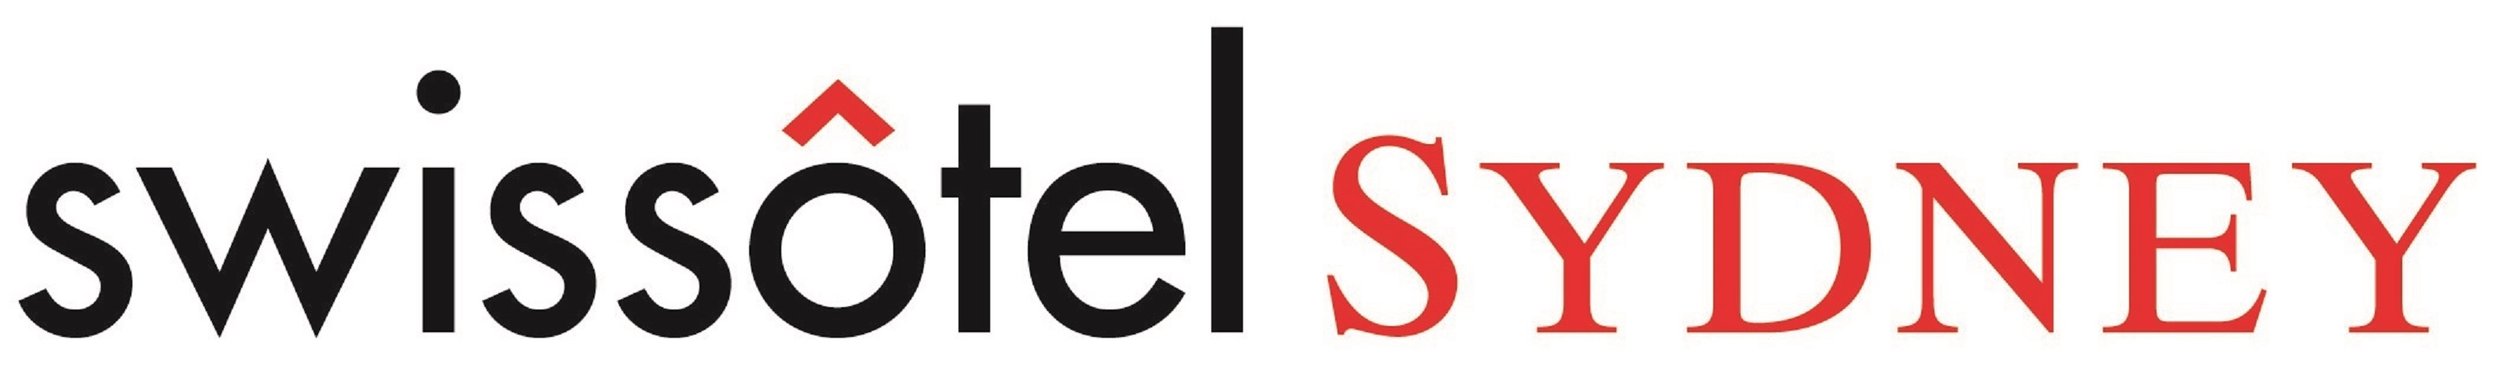 Swissotel Sydney Logo.jpg